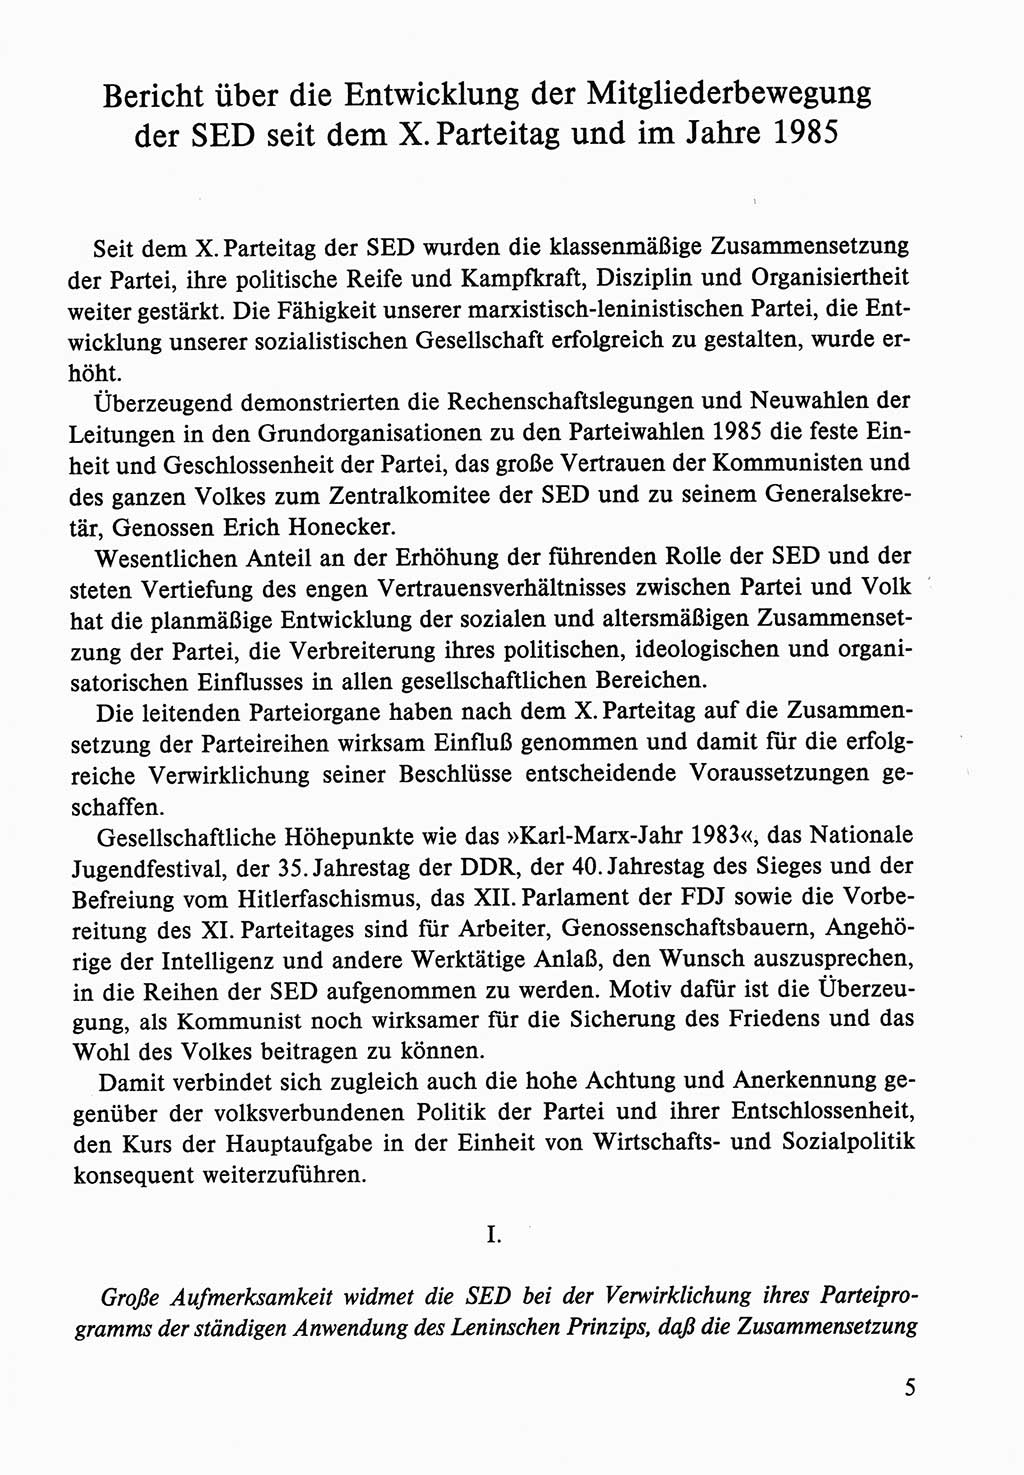 Dokumente der Sozialistischen Einheitspartei Deutschlands (SED) [Deutsche Demokratische Republik (DDR)] 1986-1987, Seite 5 (Dok. SED DDR 1986-1987, S. 5)